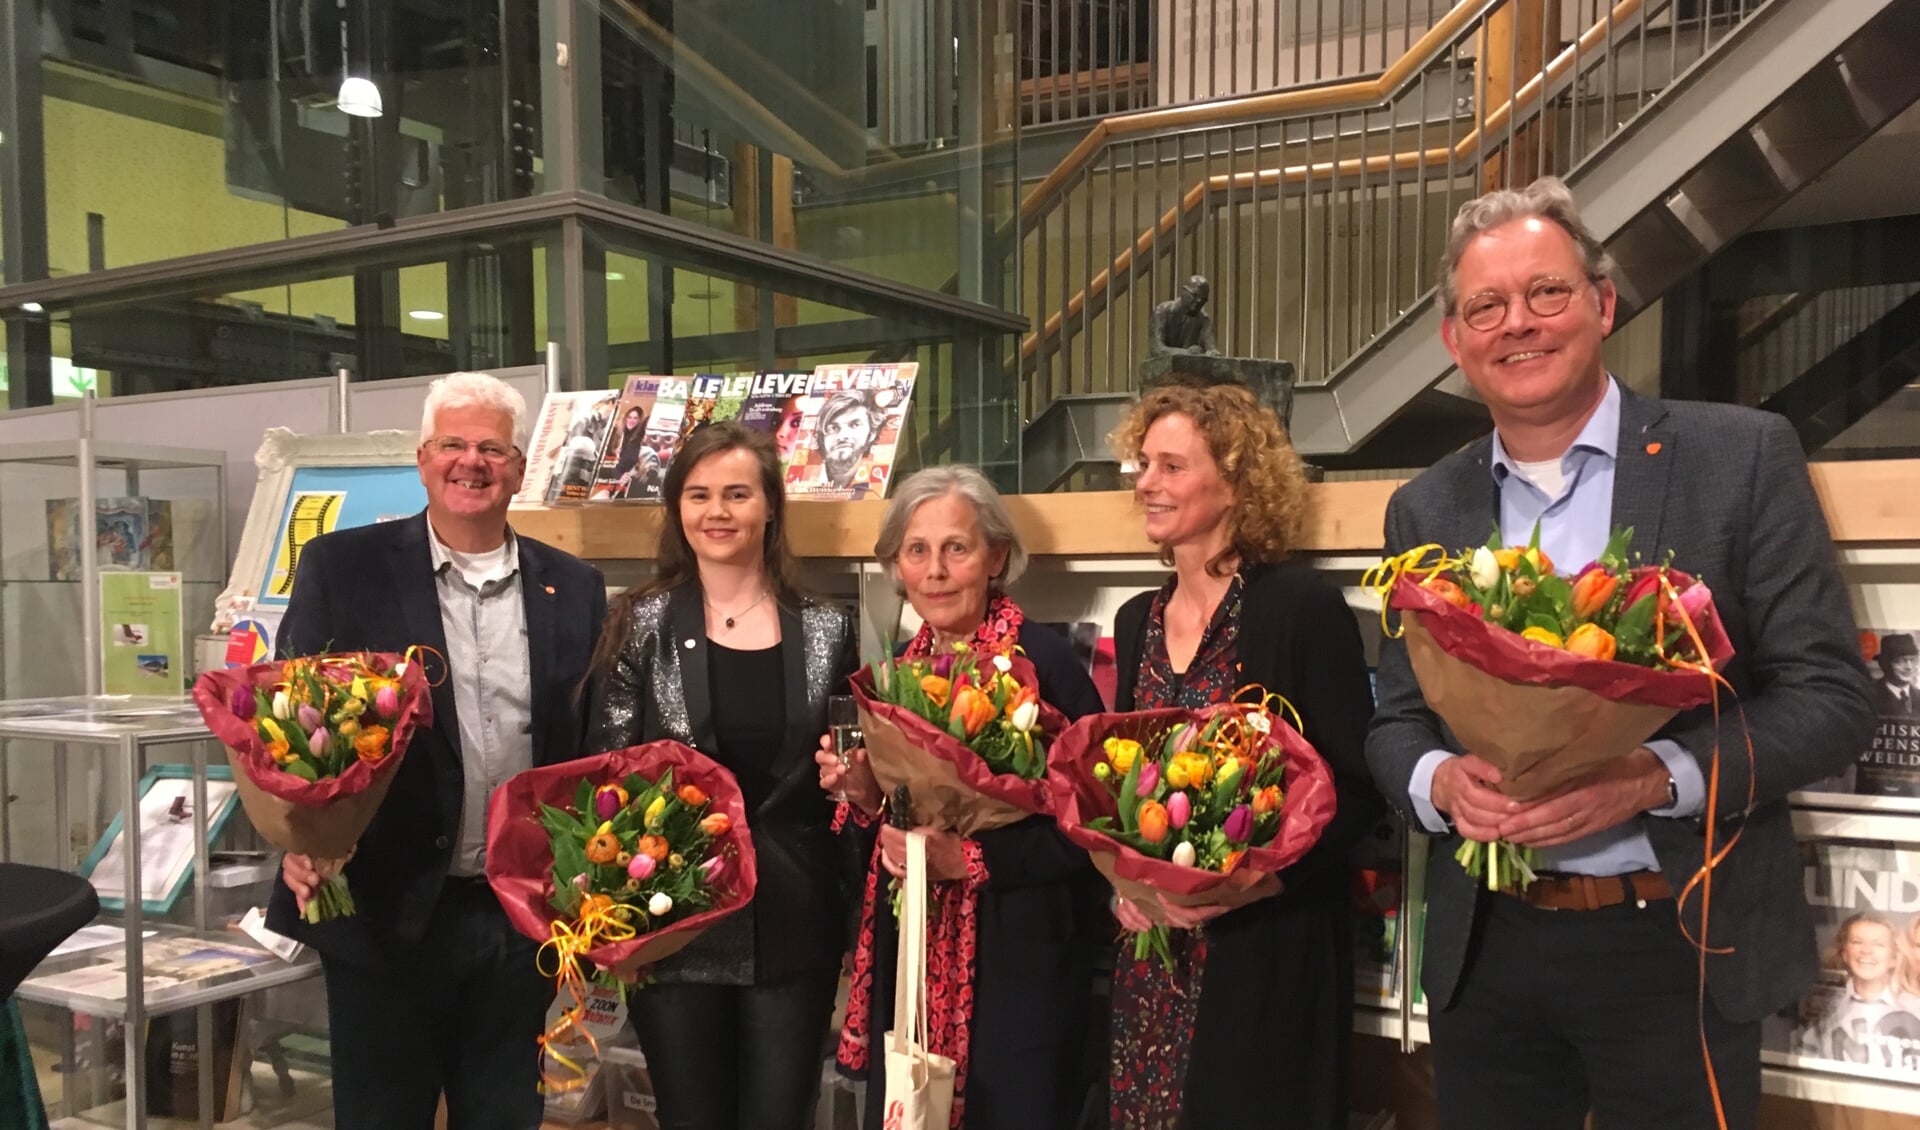 schrijvers van de shortlist 2019l vlnr. Martin Boetselaar, Soraya Vink, Ingrid Hoogendijk, Marian Rijk en Ronald van der Pol